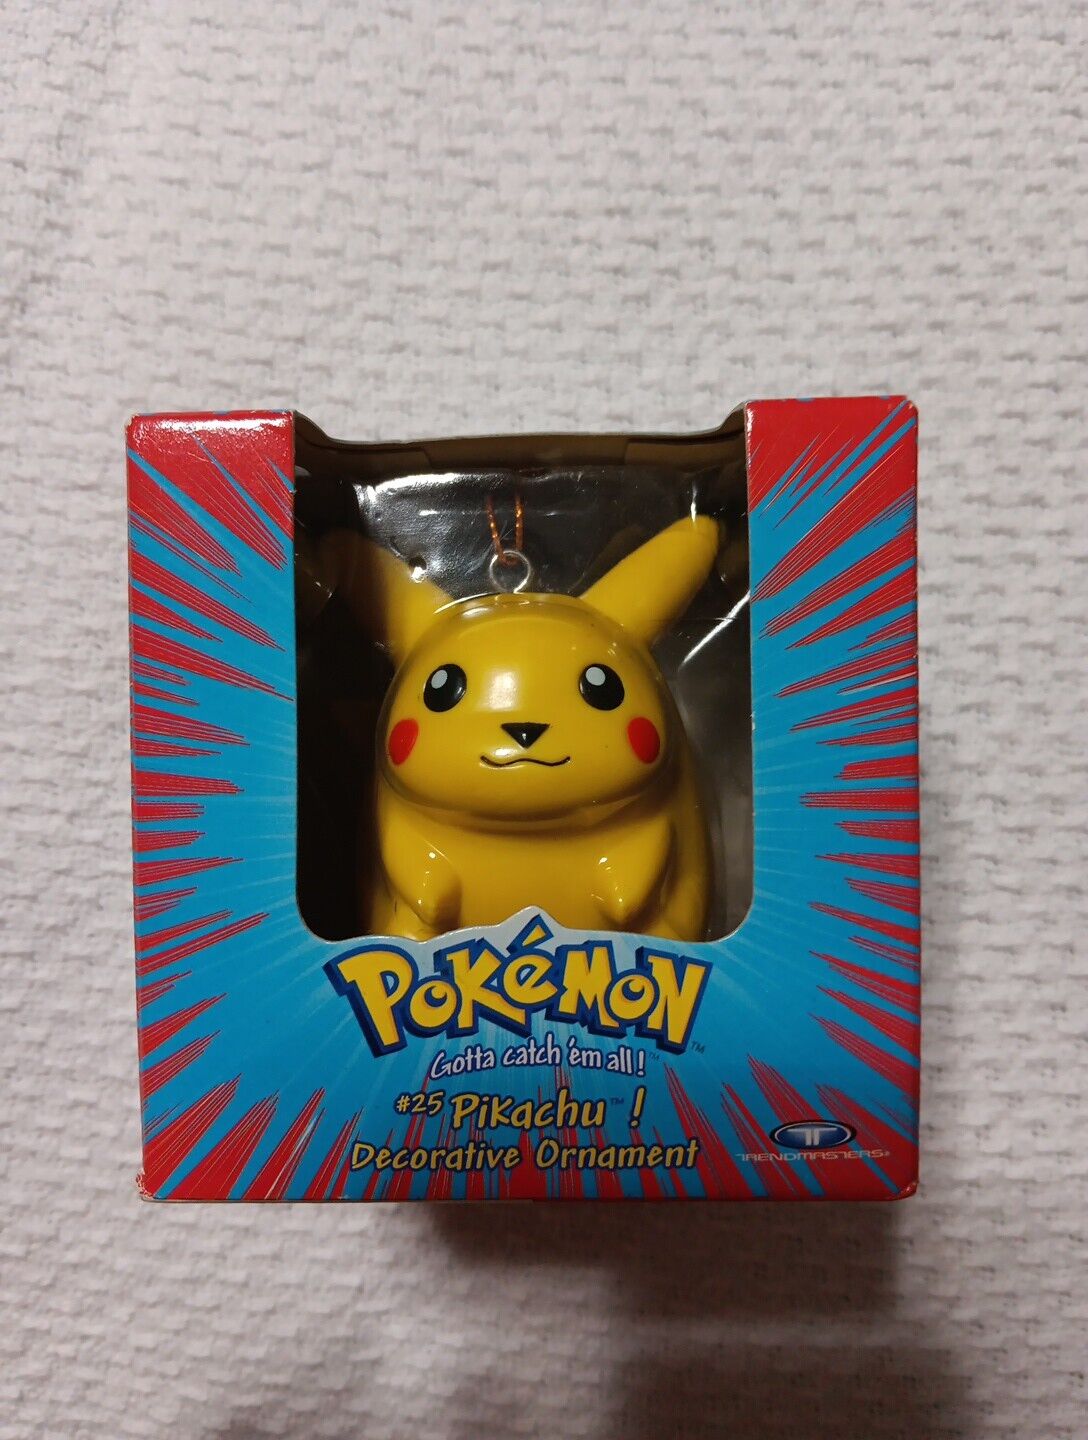 Official Nintendo Pokemon Pikachu #25 Decorative Ornament Figure 1999 NEW IN BOX